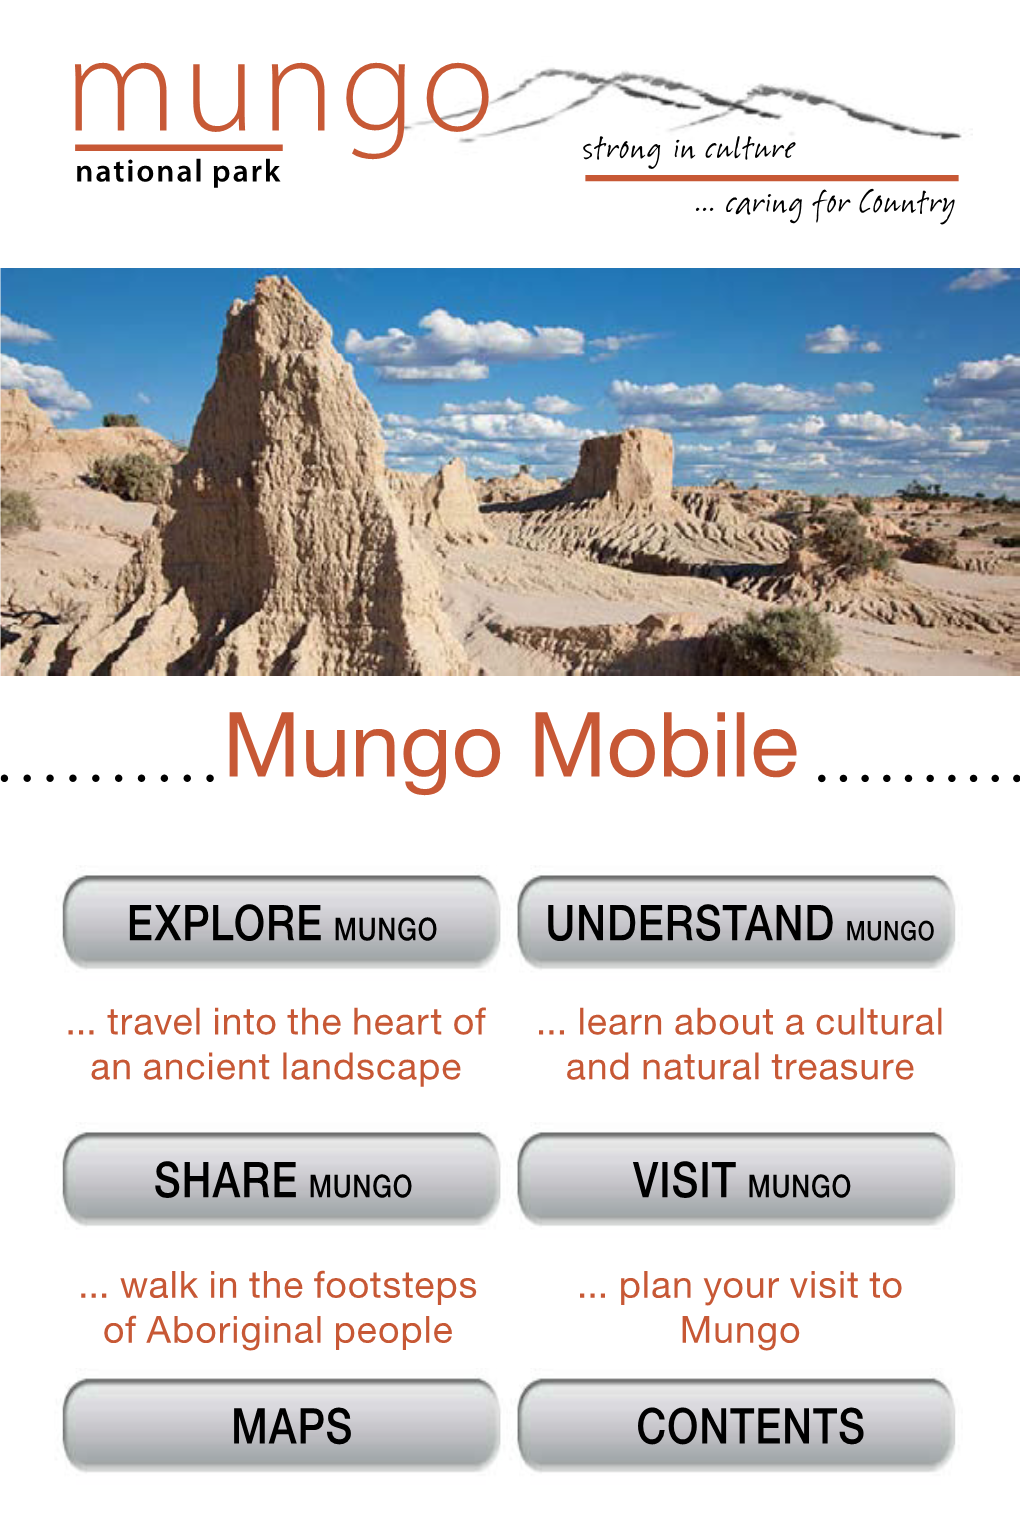 Mungo Mobile